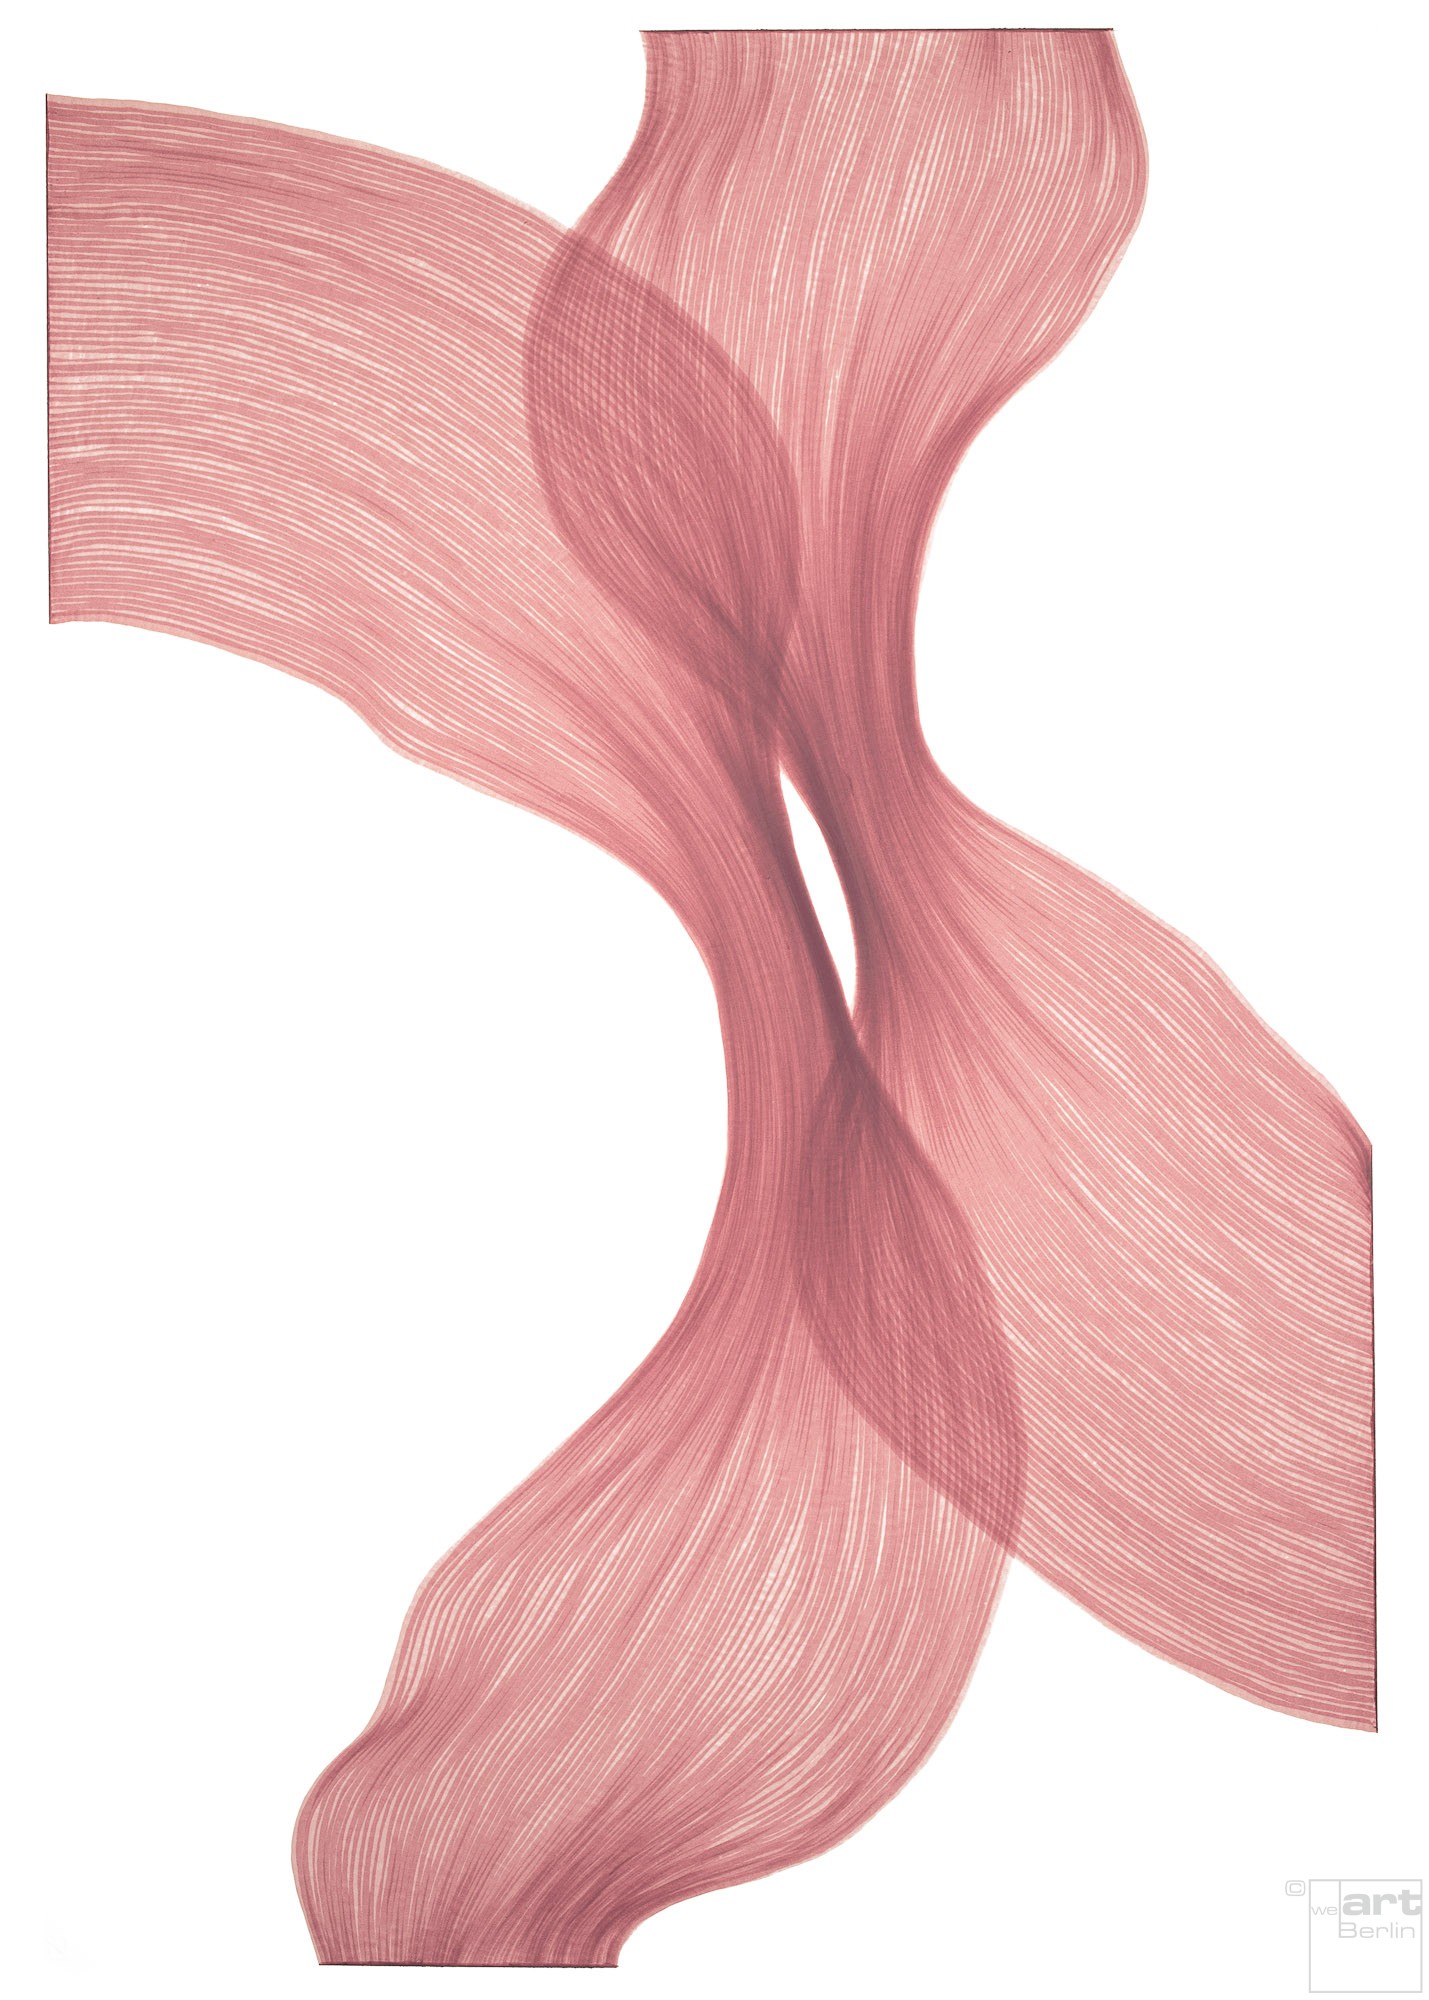 Raspberry Cream Sheer Folds | Lali Torma | Zeichnung | Kalligraphietusche auf Papier